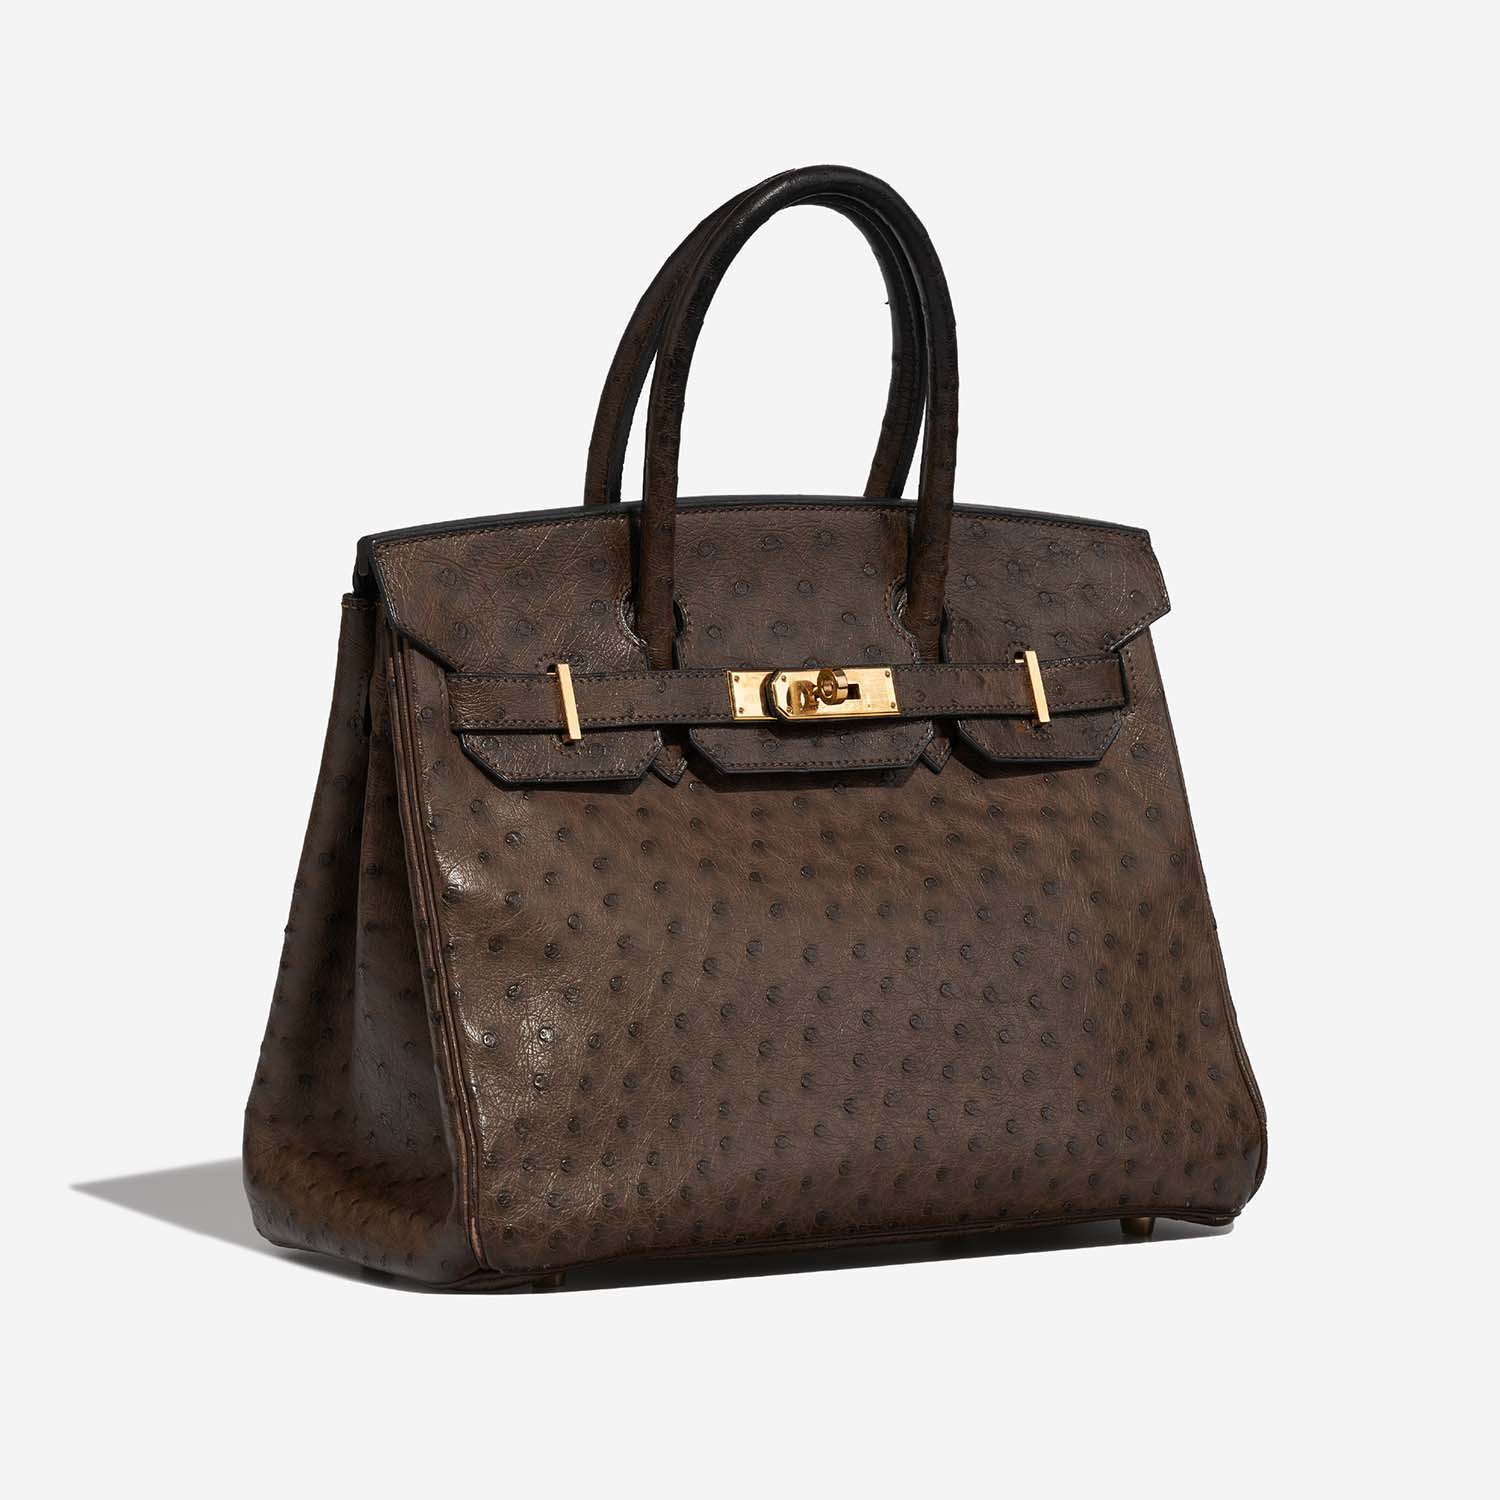 Hermès Birkin 30 Marron Side Front | Verkaufen Sie Ihre Designer-Tasche auf Saclab.com